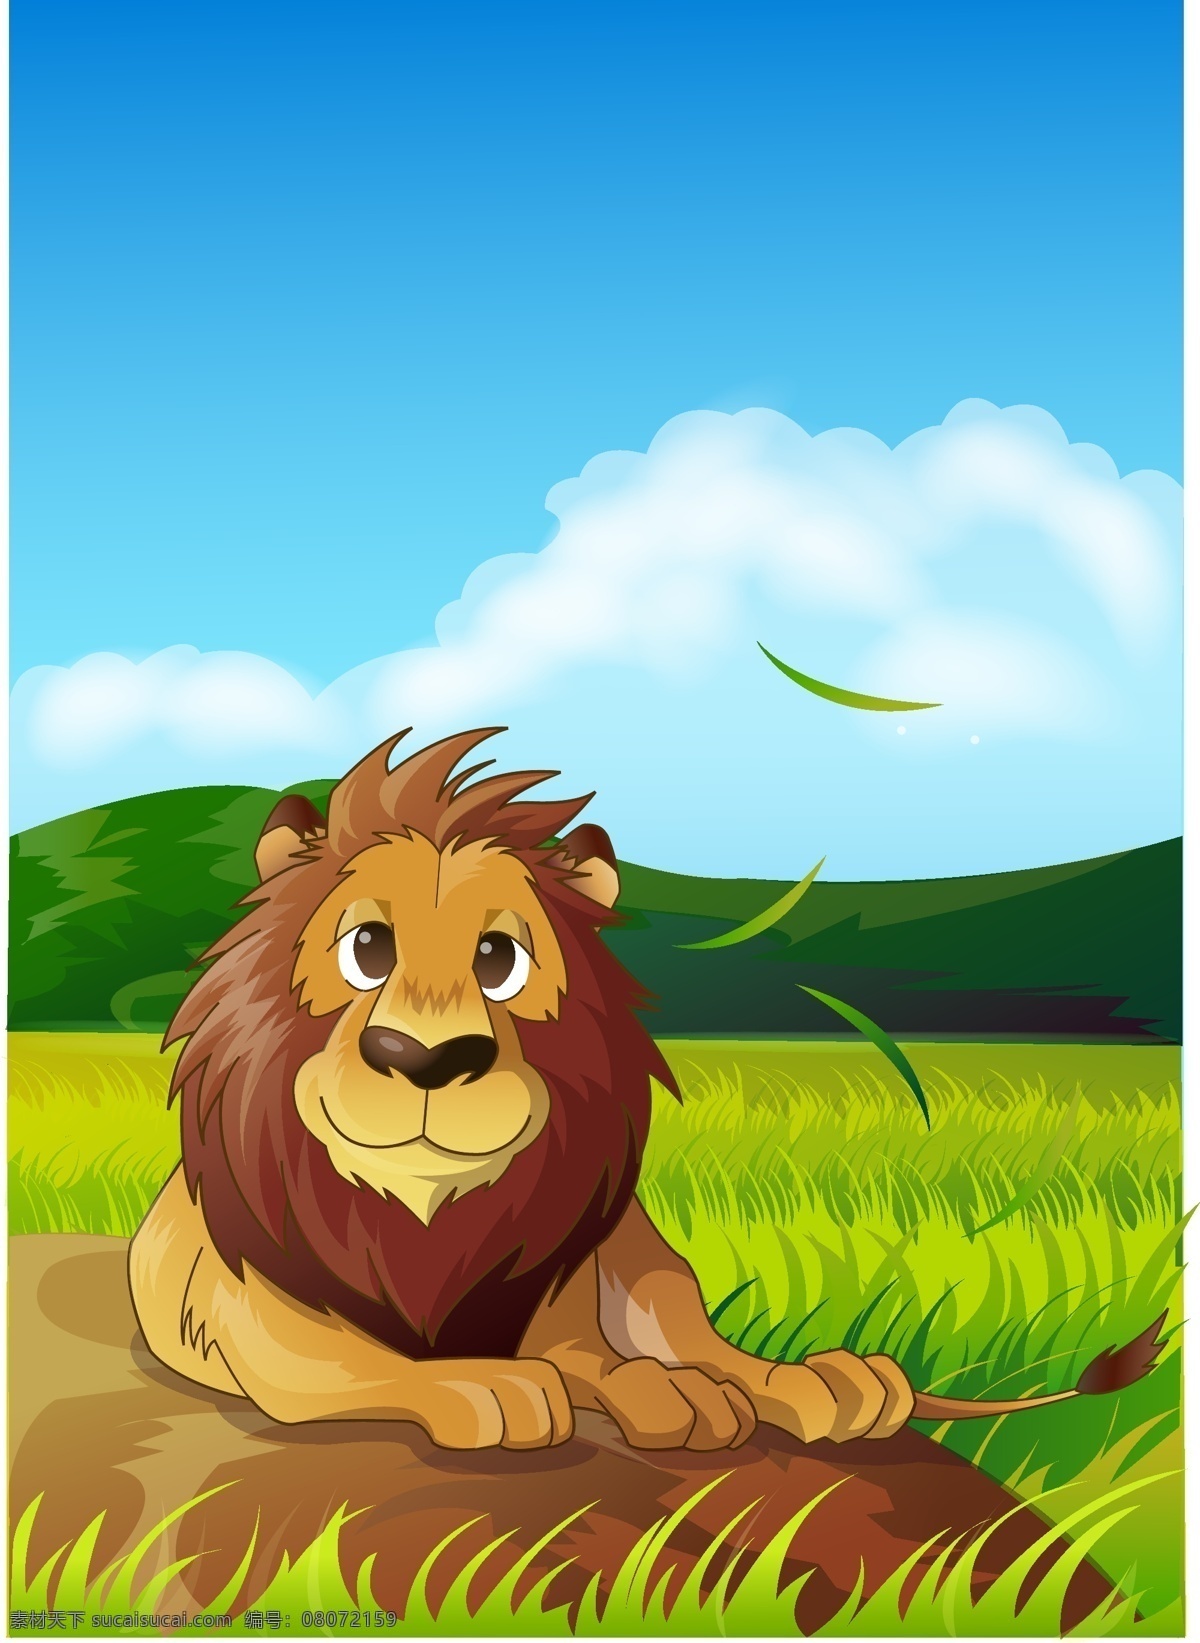 可爱 动物 绿色 公 狮子 动物矢量素材 动物模板下载 森林 森林背景 野兽 自然 自然背景 野生动物 生物世界 矢量 其他设计 卡通设计